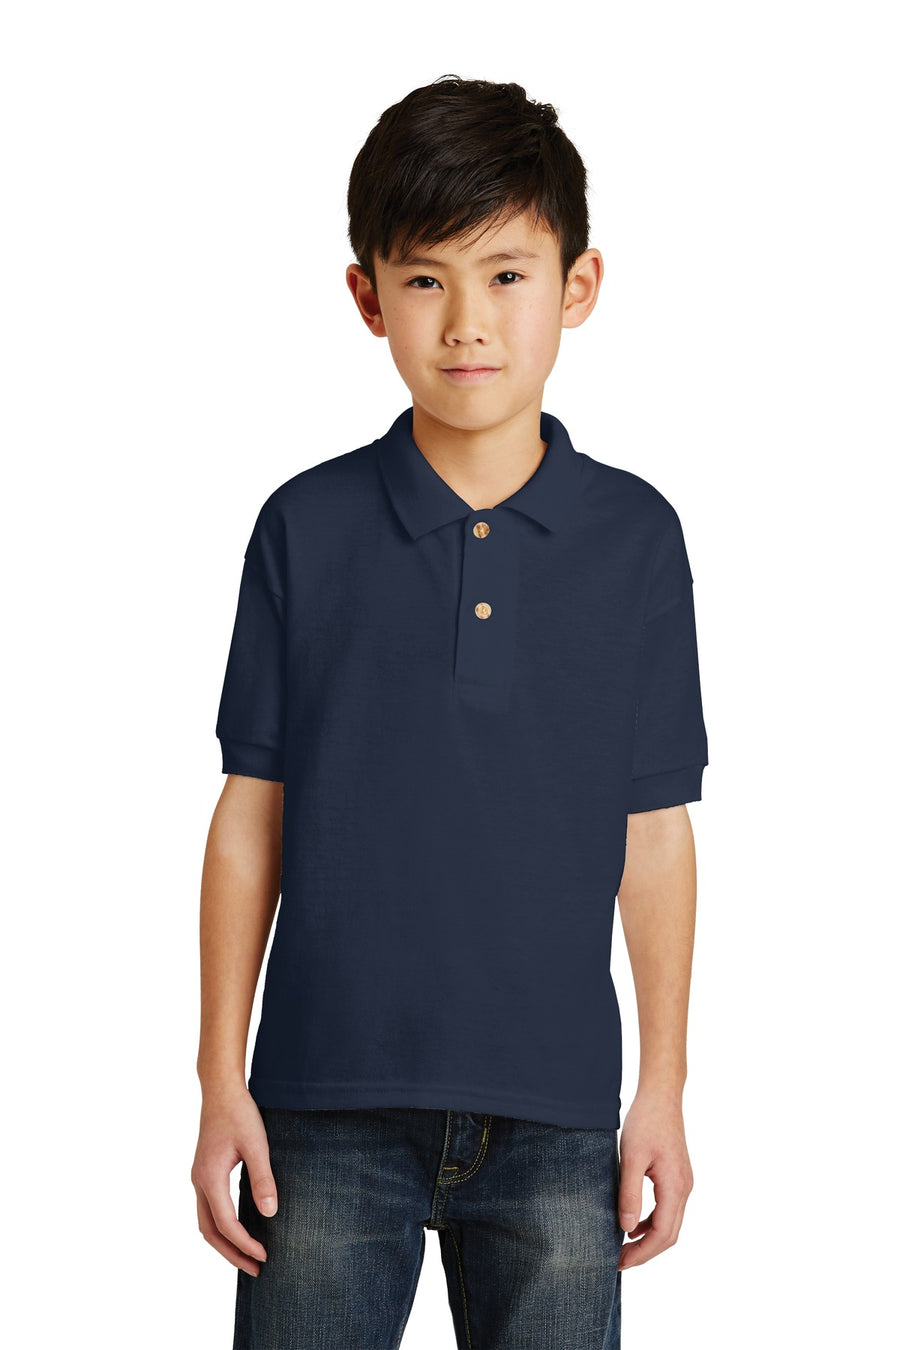 Gildan Youth DryBlend 6-Ounce Jersey Knit Sport Shirt.